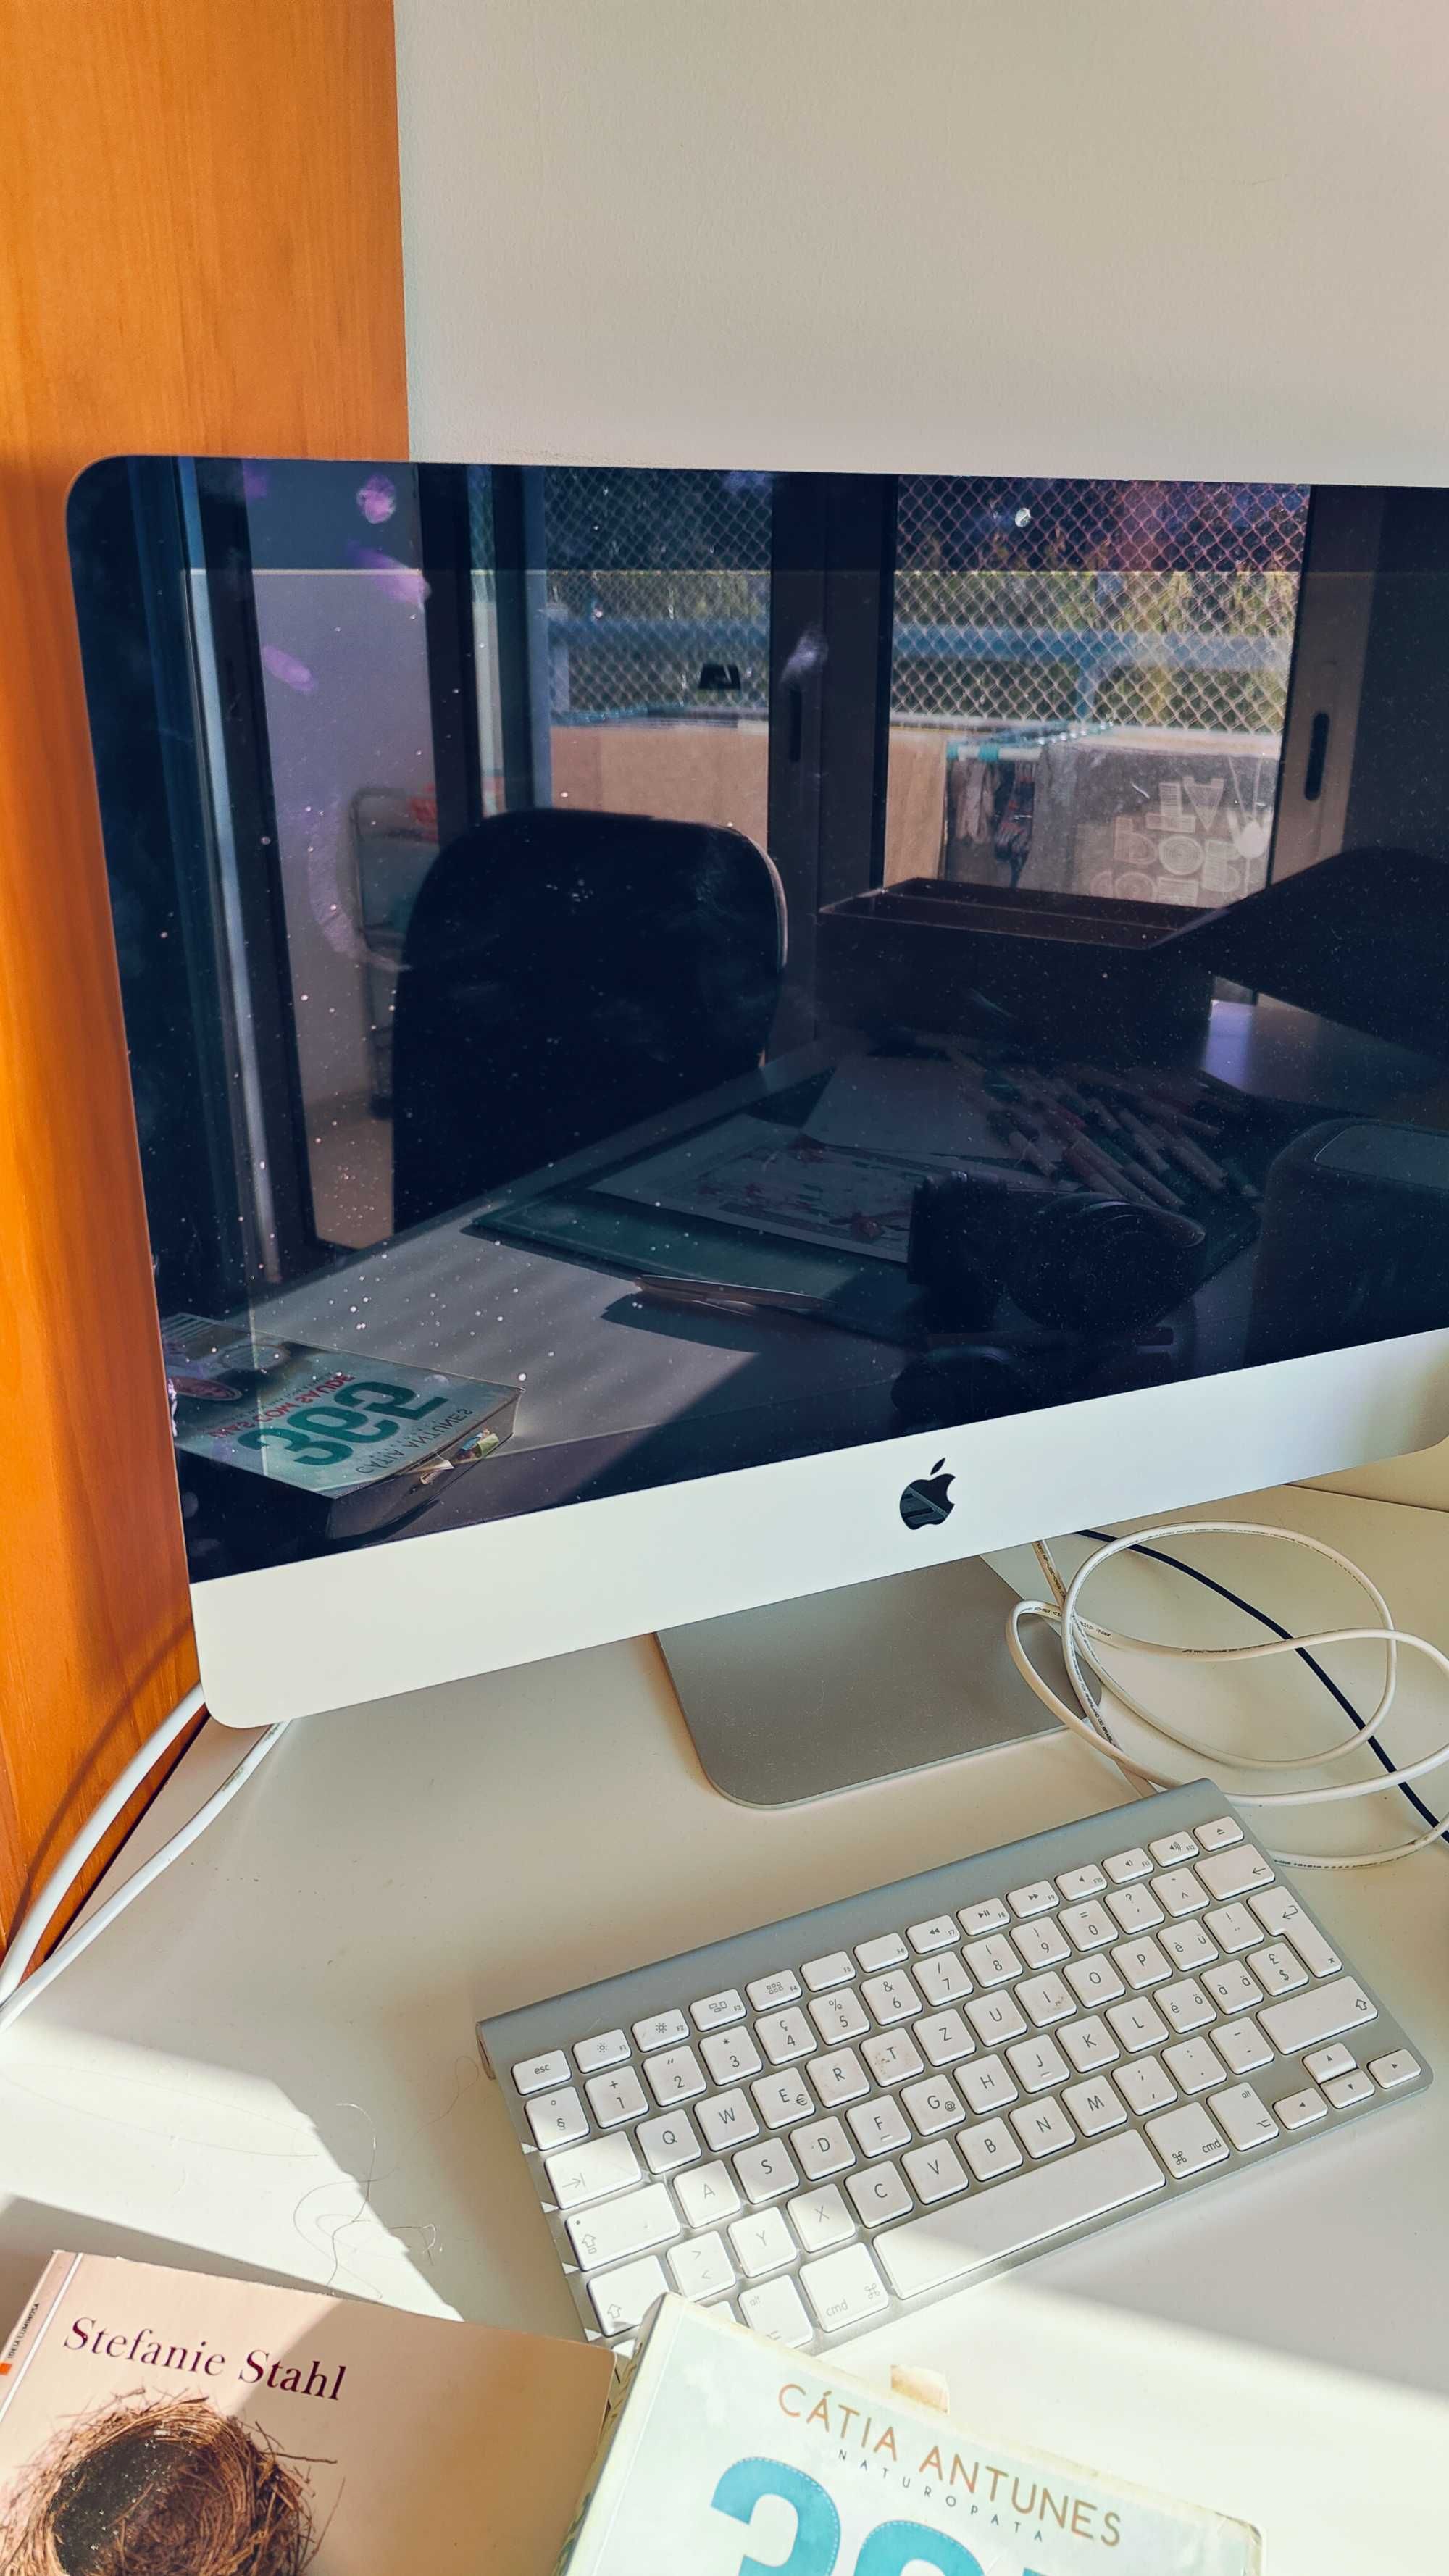 iMac 21,5 polegadas - meados 2014